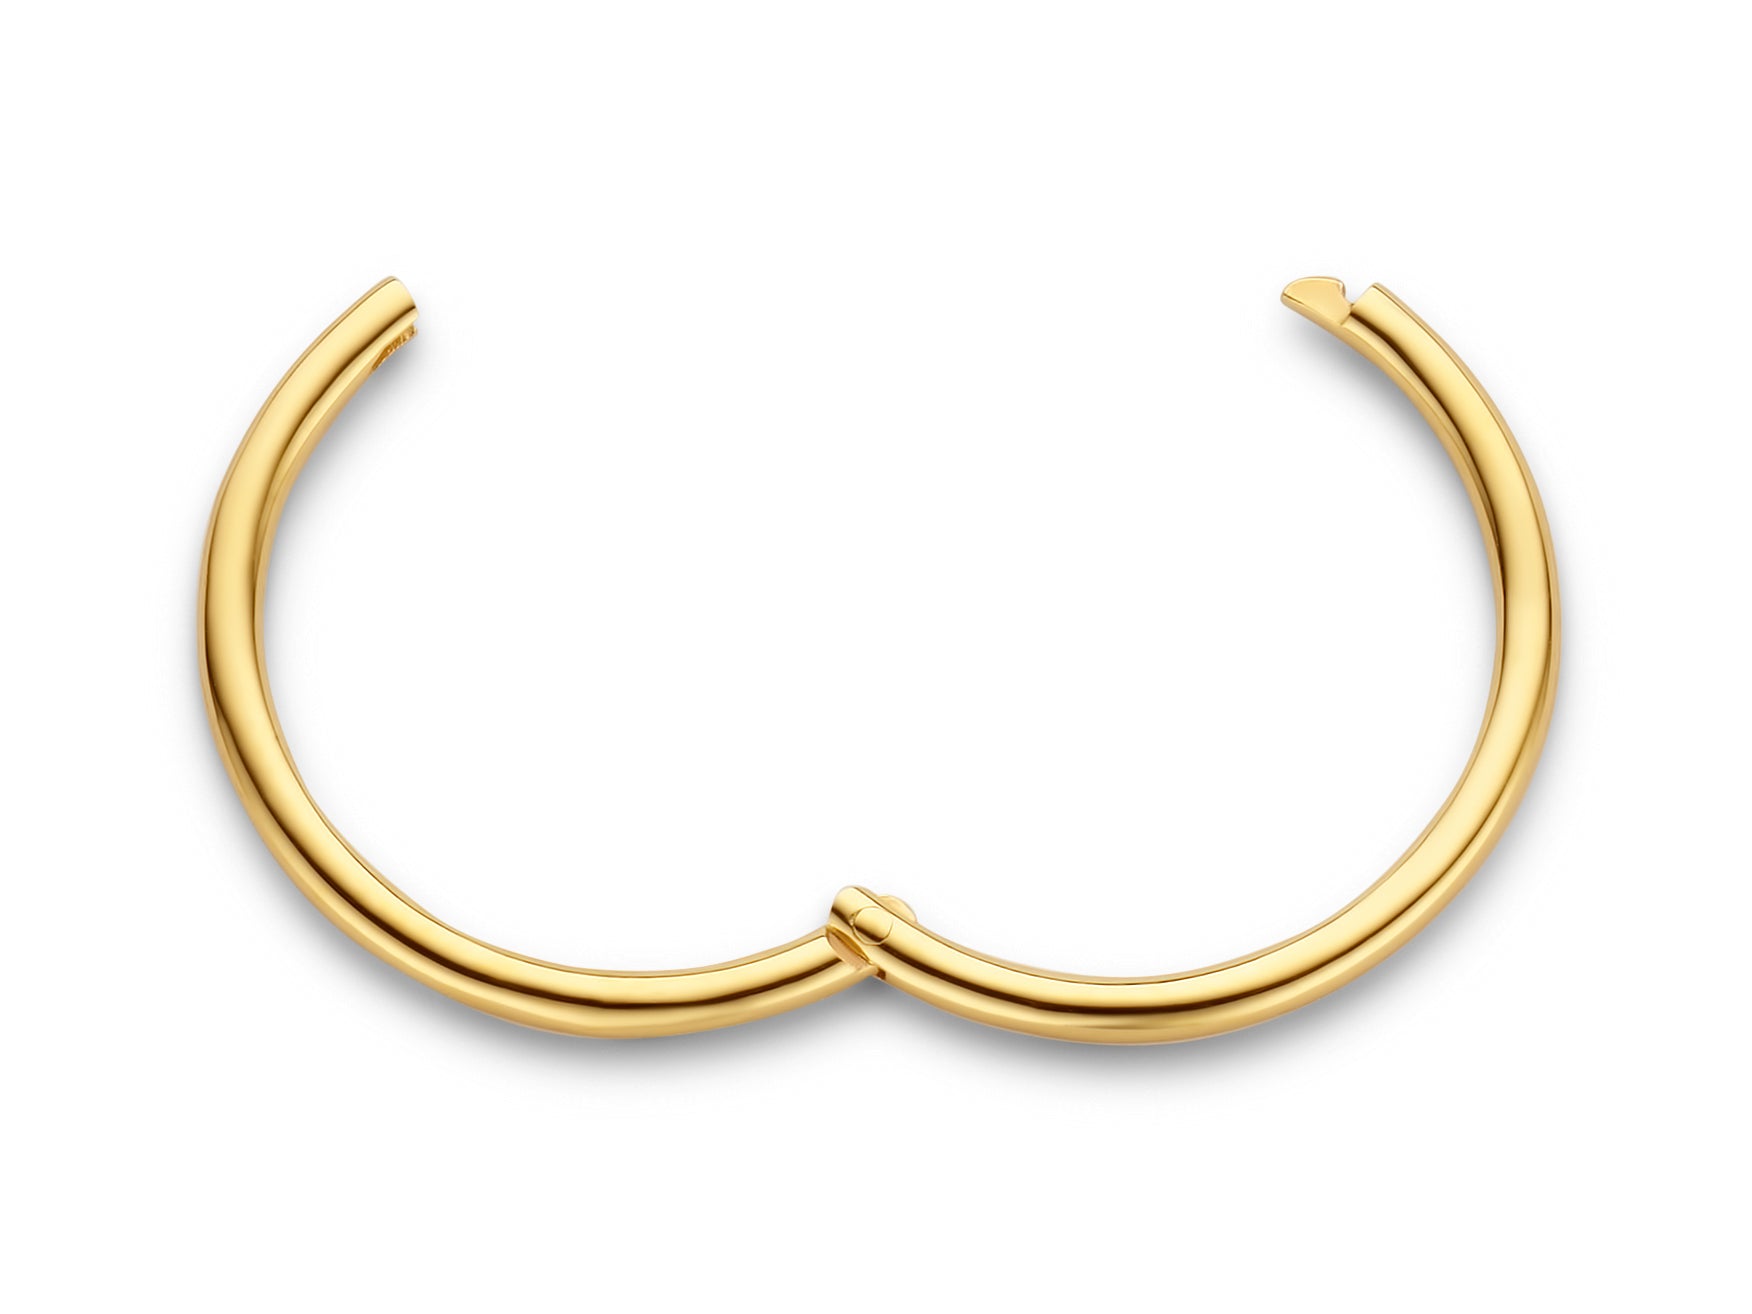 Imagine hoop øreringe uden vedhæng - small diameter 1,5 cm - 14 kt. guld-1